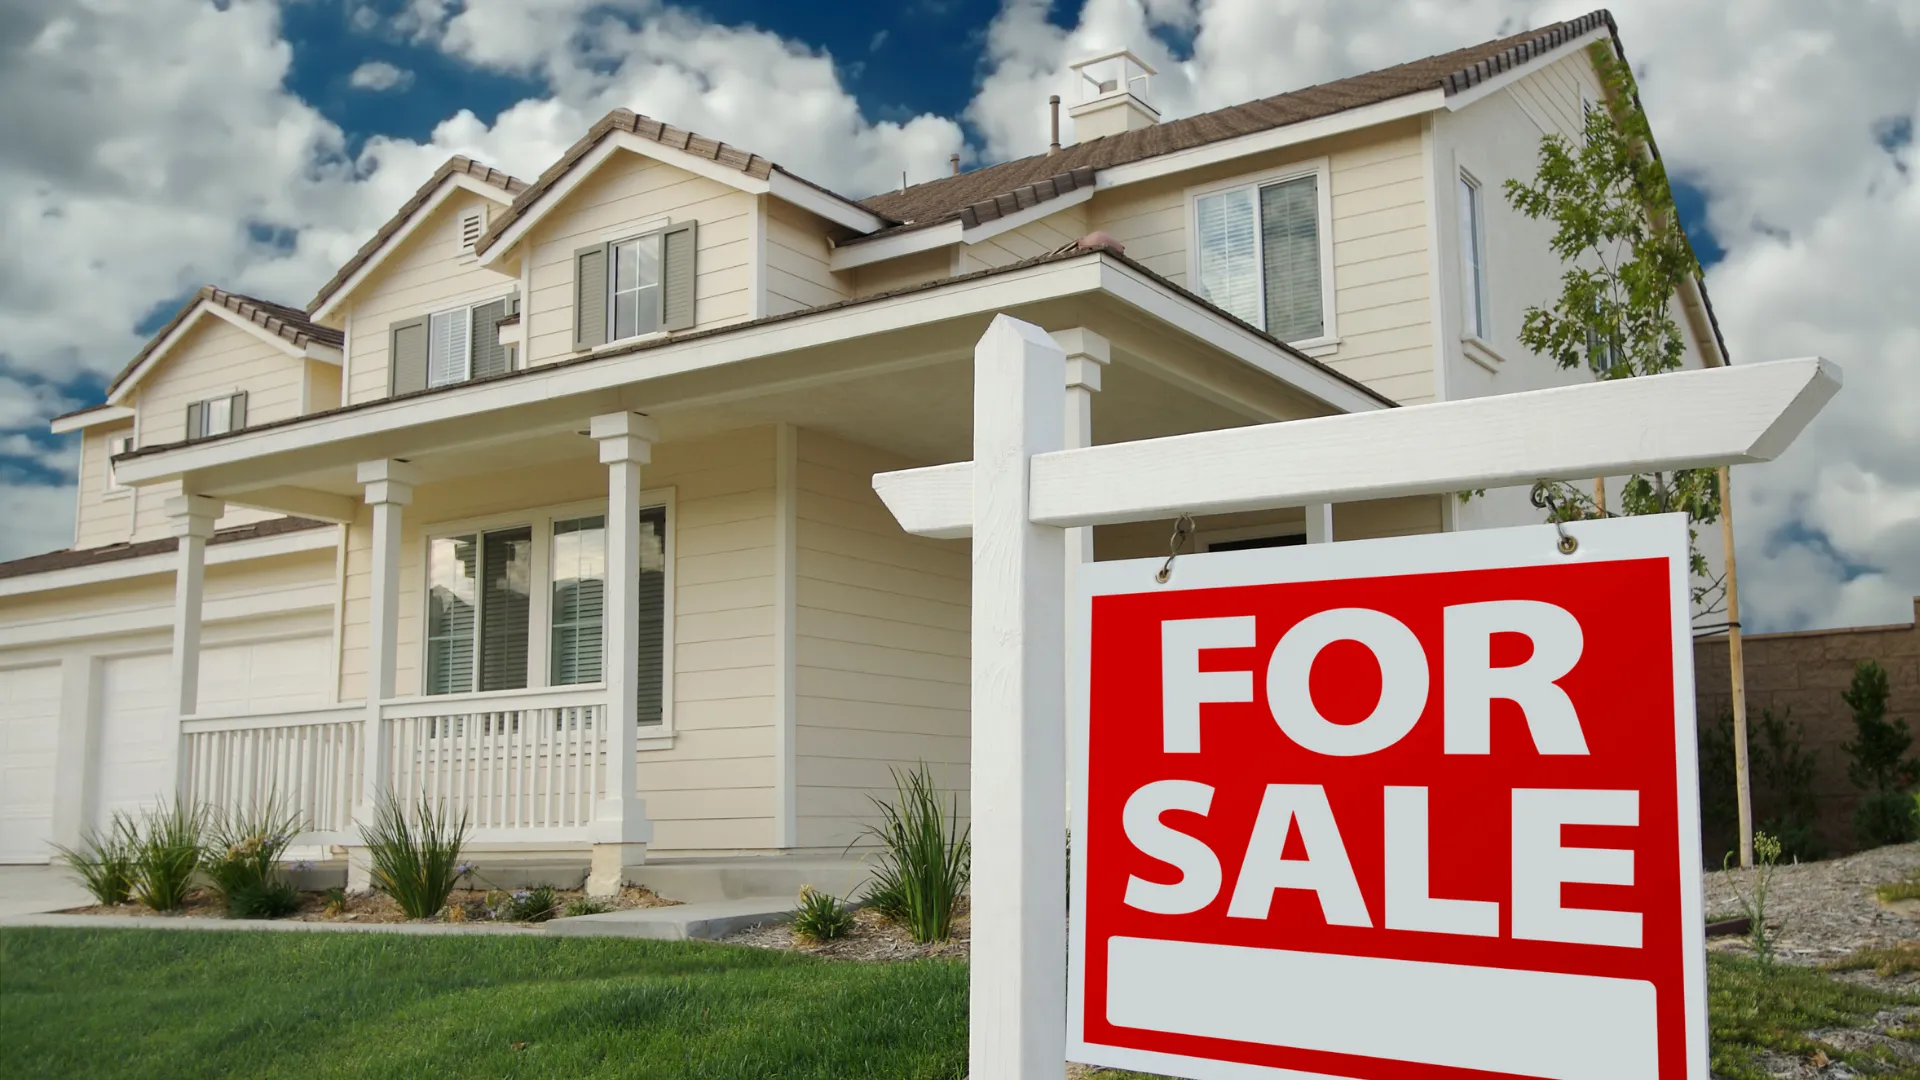 집을 팔기에 적당할 때는 언제인가?